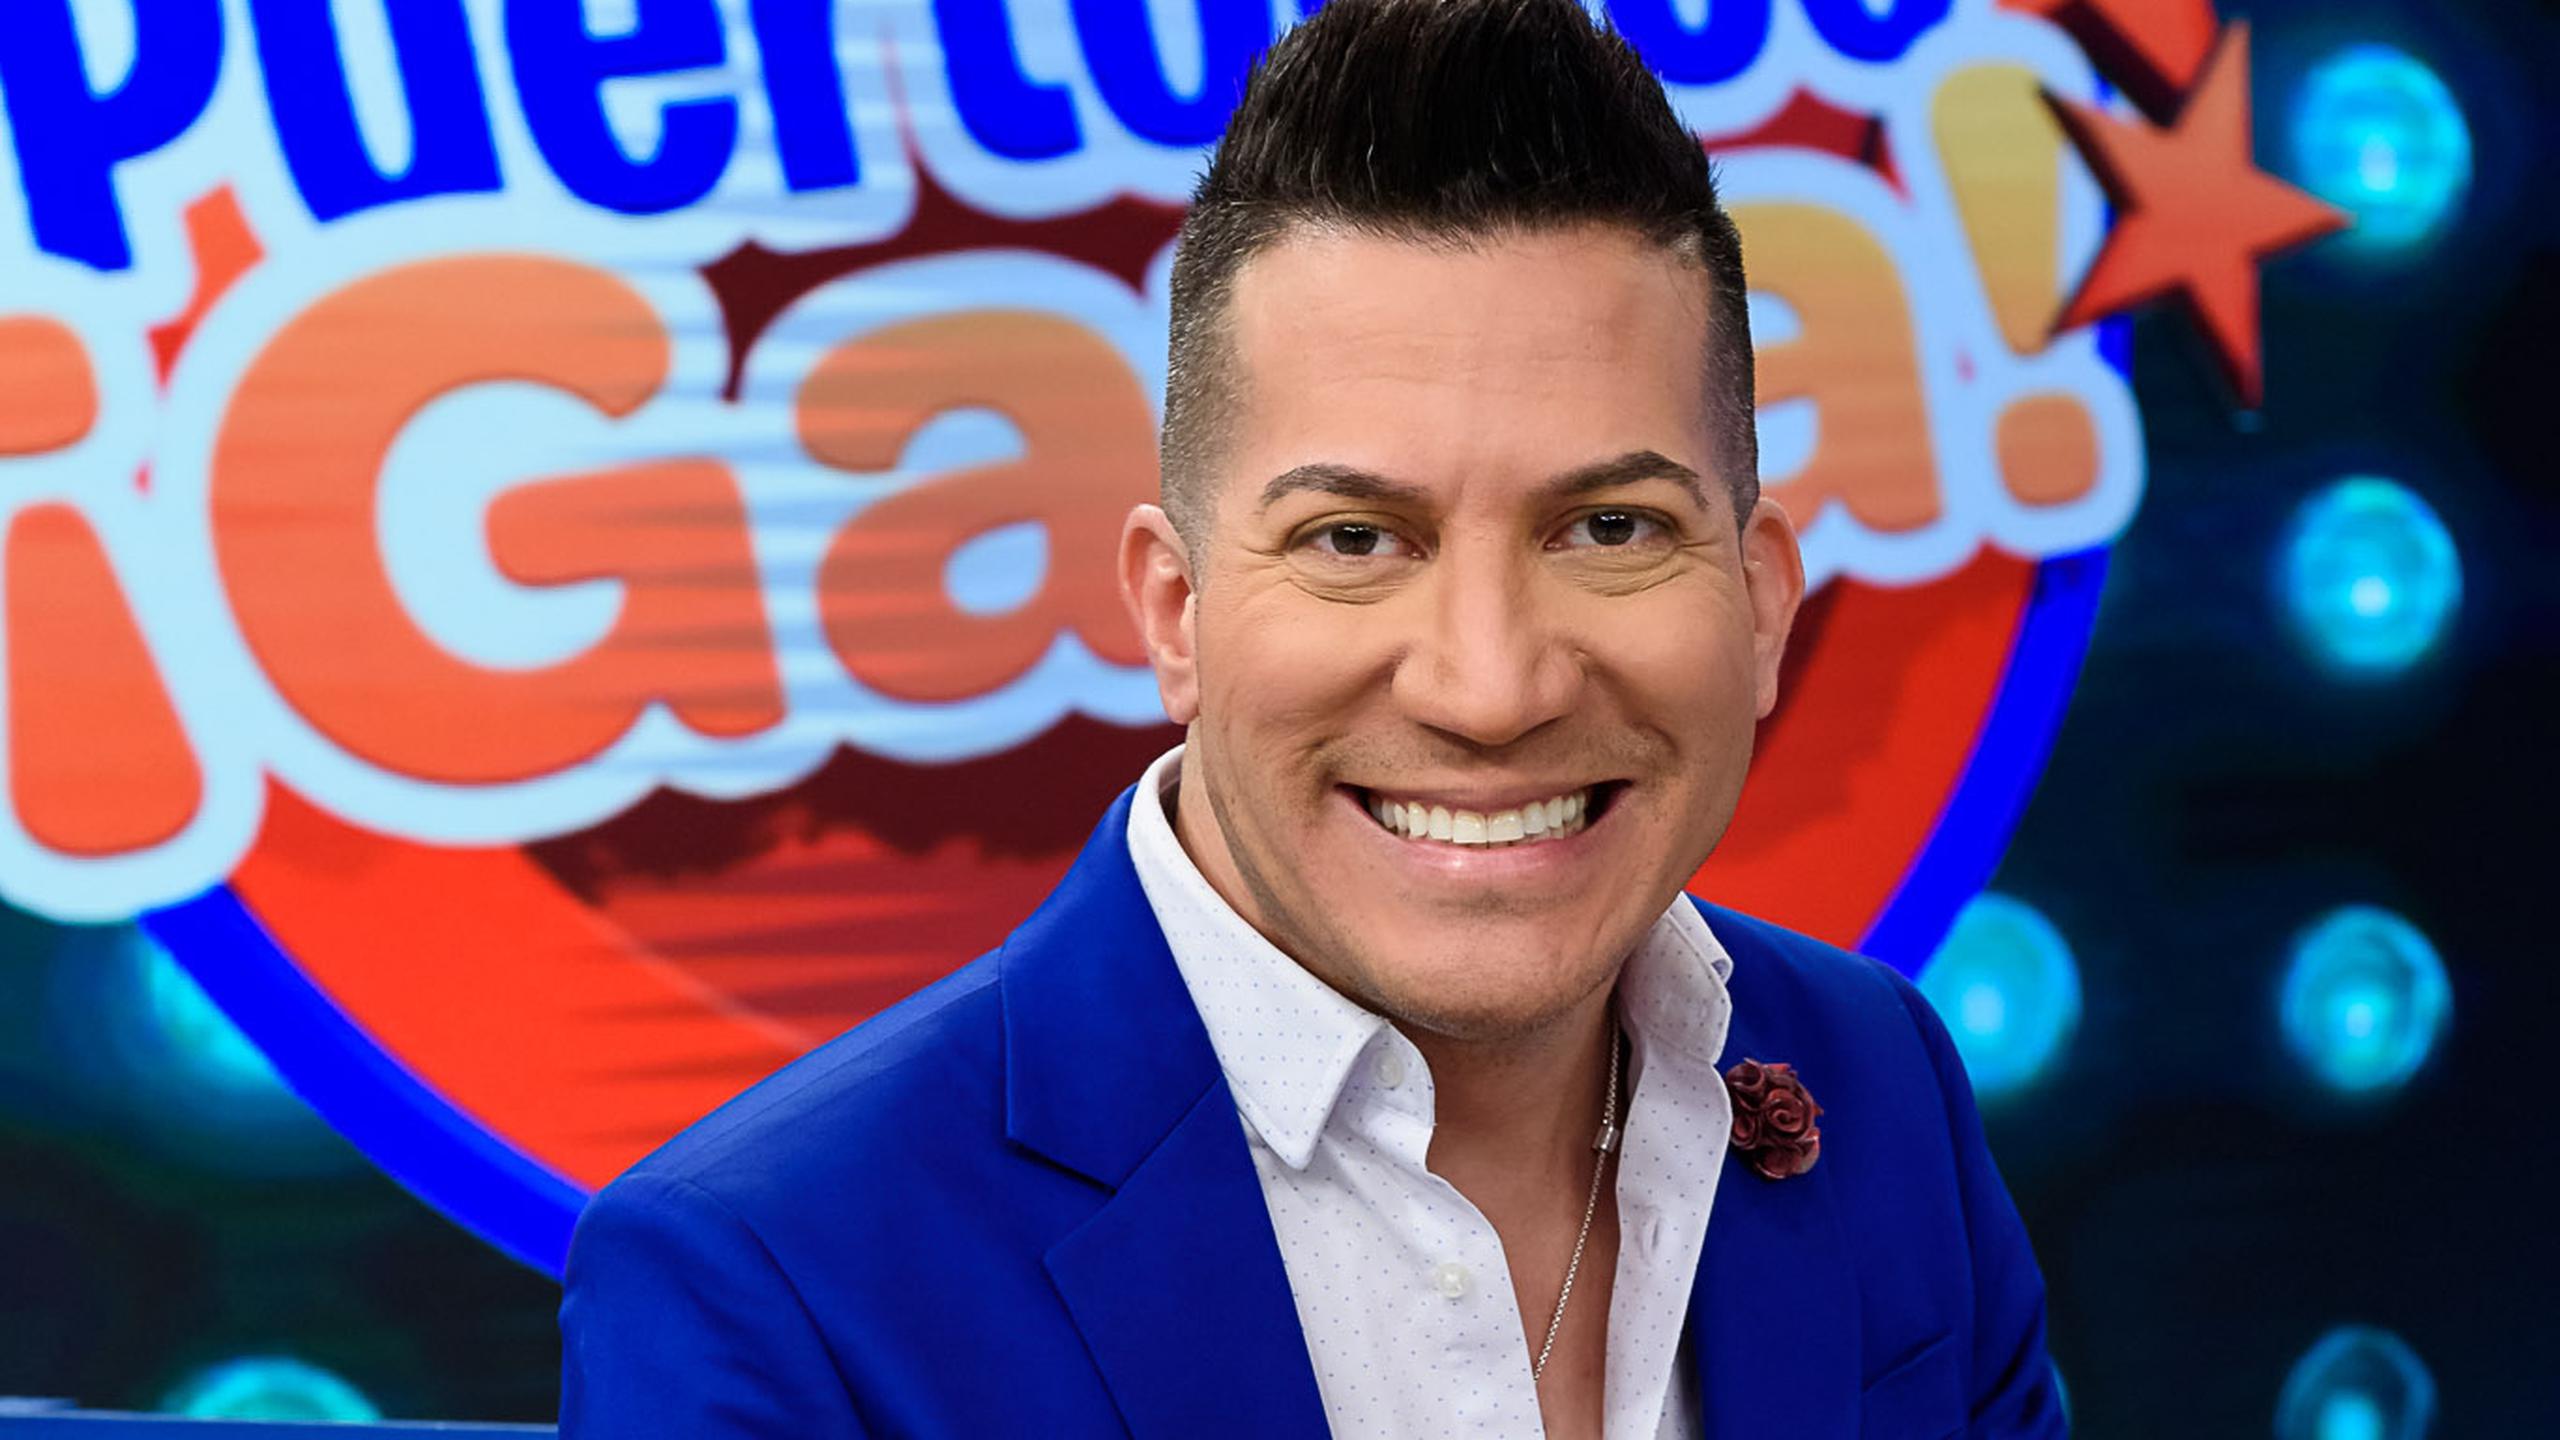 El espectáculo de "Puerto Rico Gana", animado por Alex DJ, será parte del programa artístico.